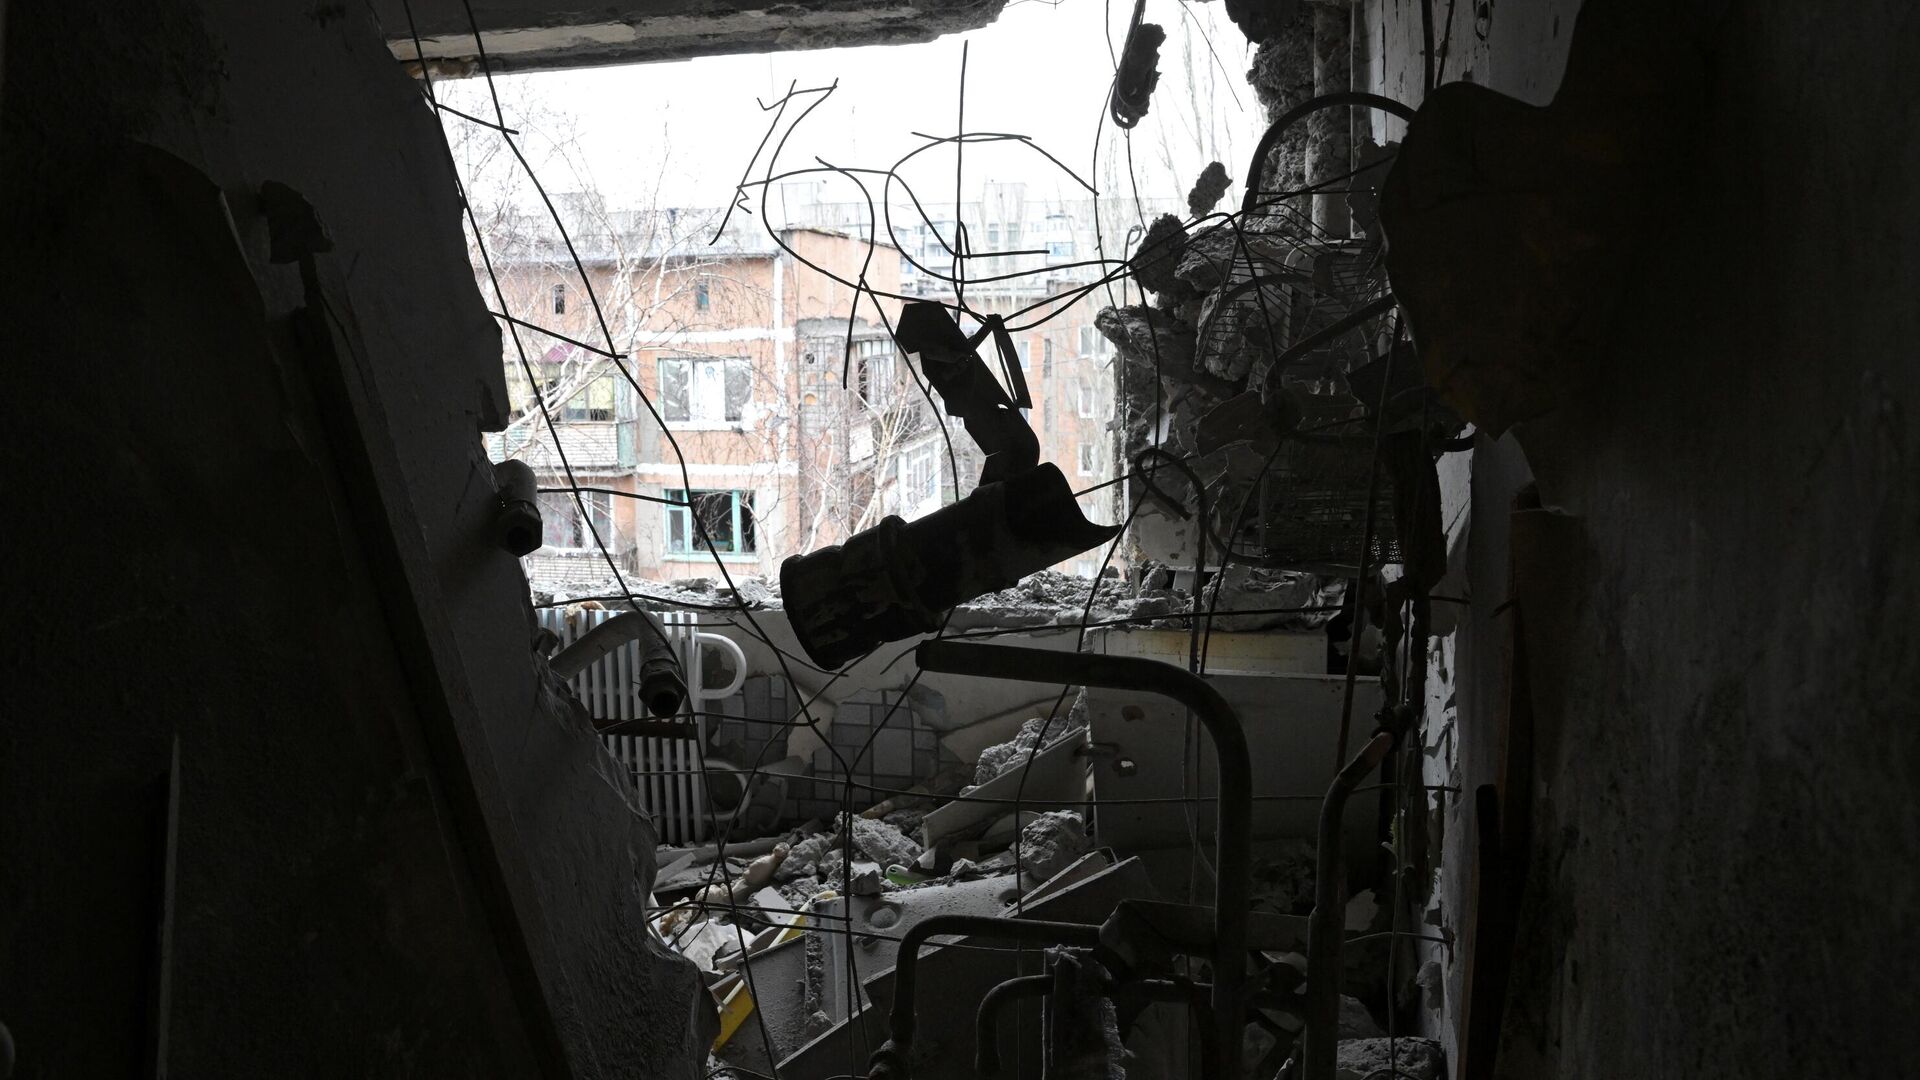 Квартира, пострадавшая в результате прямого попадания снаряда в жилой дом в Горловке - РИА Новости, 1920, 26.07.2022